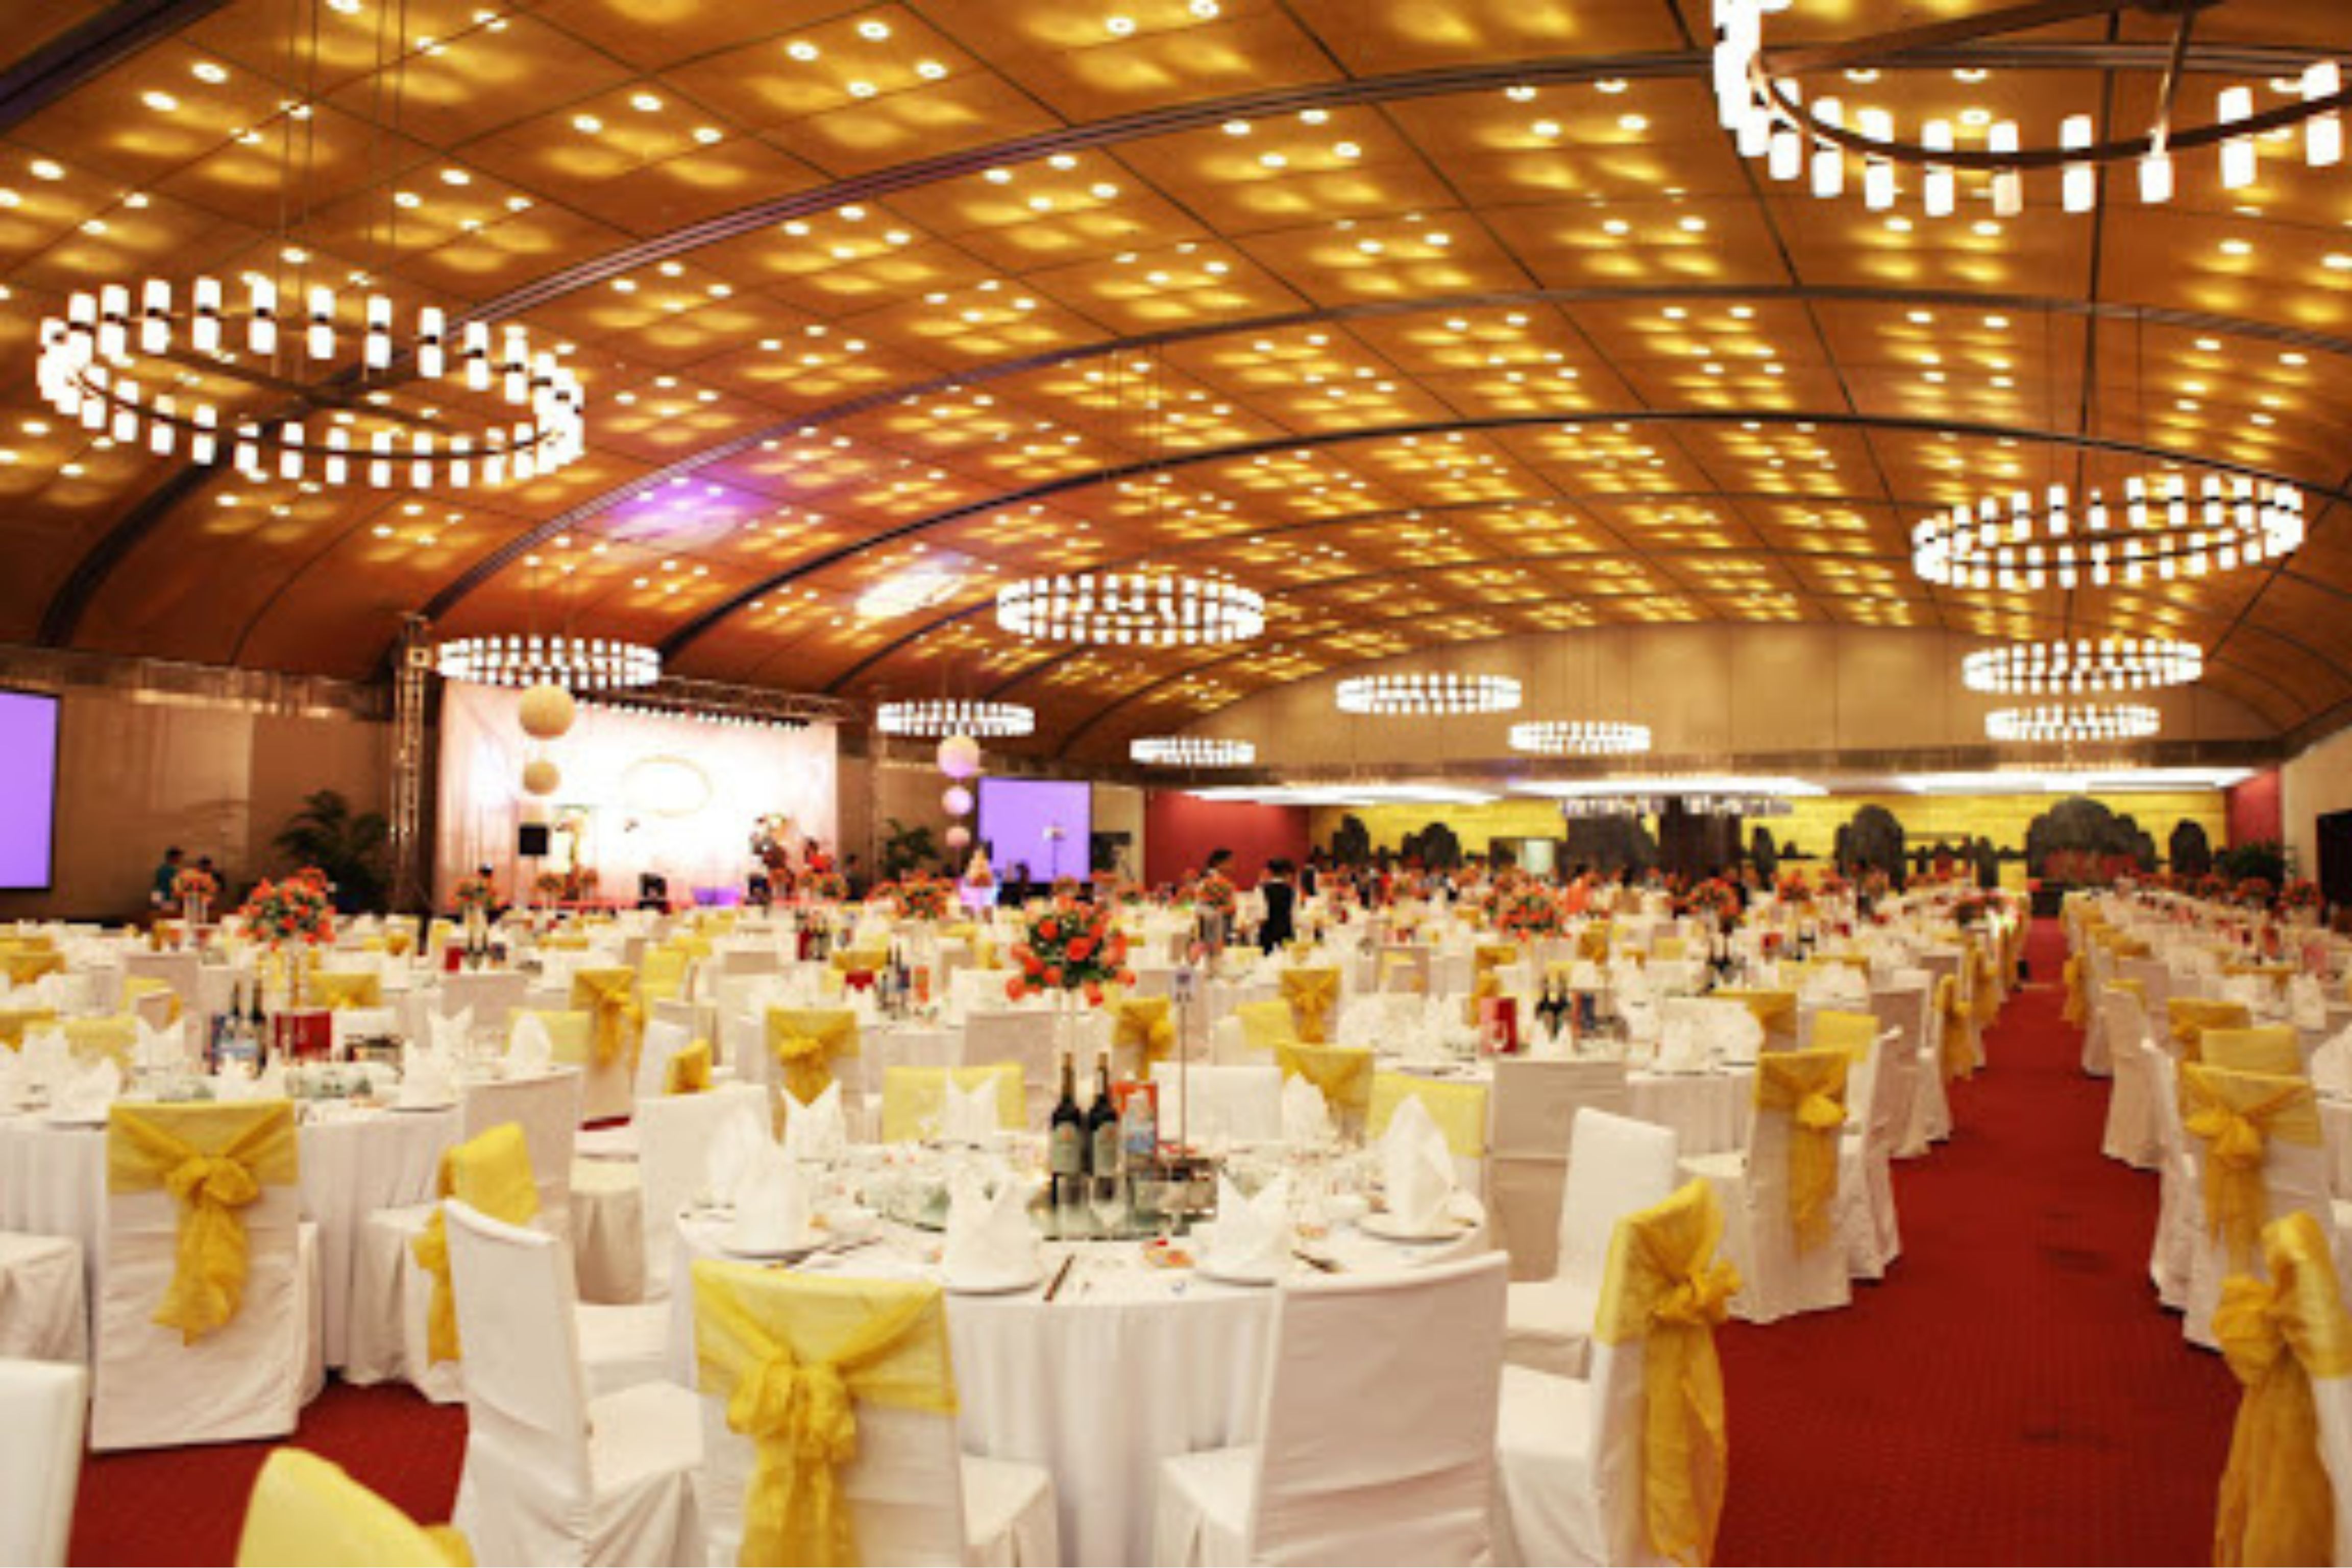 Trung tâm Hội nghị quốc gia là một trong những trung tâm hội nghị tại Việt Nam đạt tiêu chuẩn quốc tế 